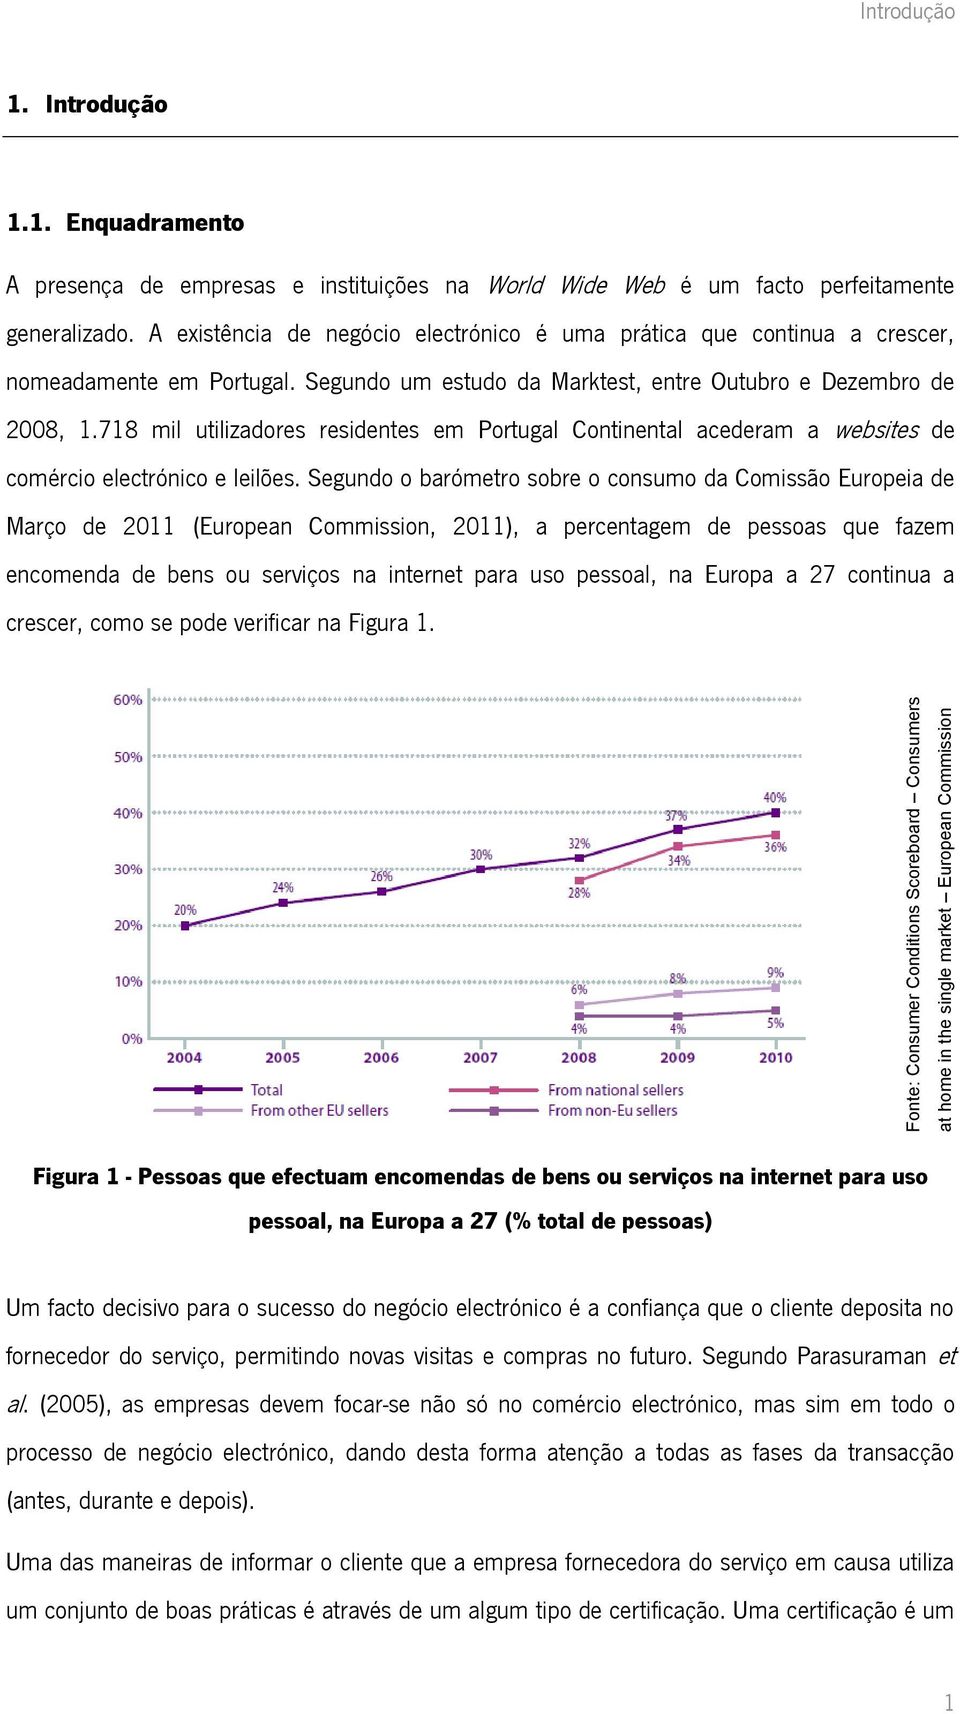 A existência de negócio electrónico é uma prática que continua a crescer, nomeadamente em Portugal. Segundo um estudo da Marktest, entre Outubro e Dezembro de 2008, 1.